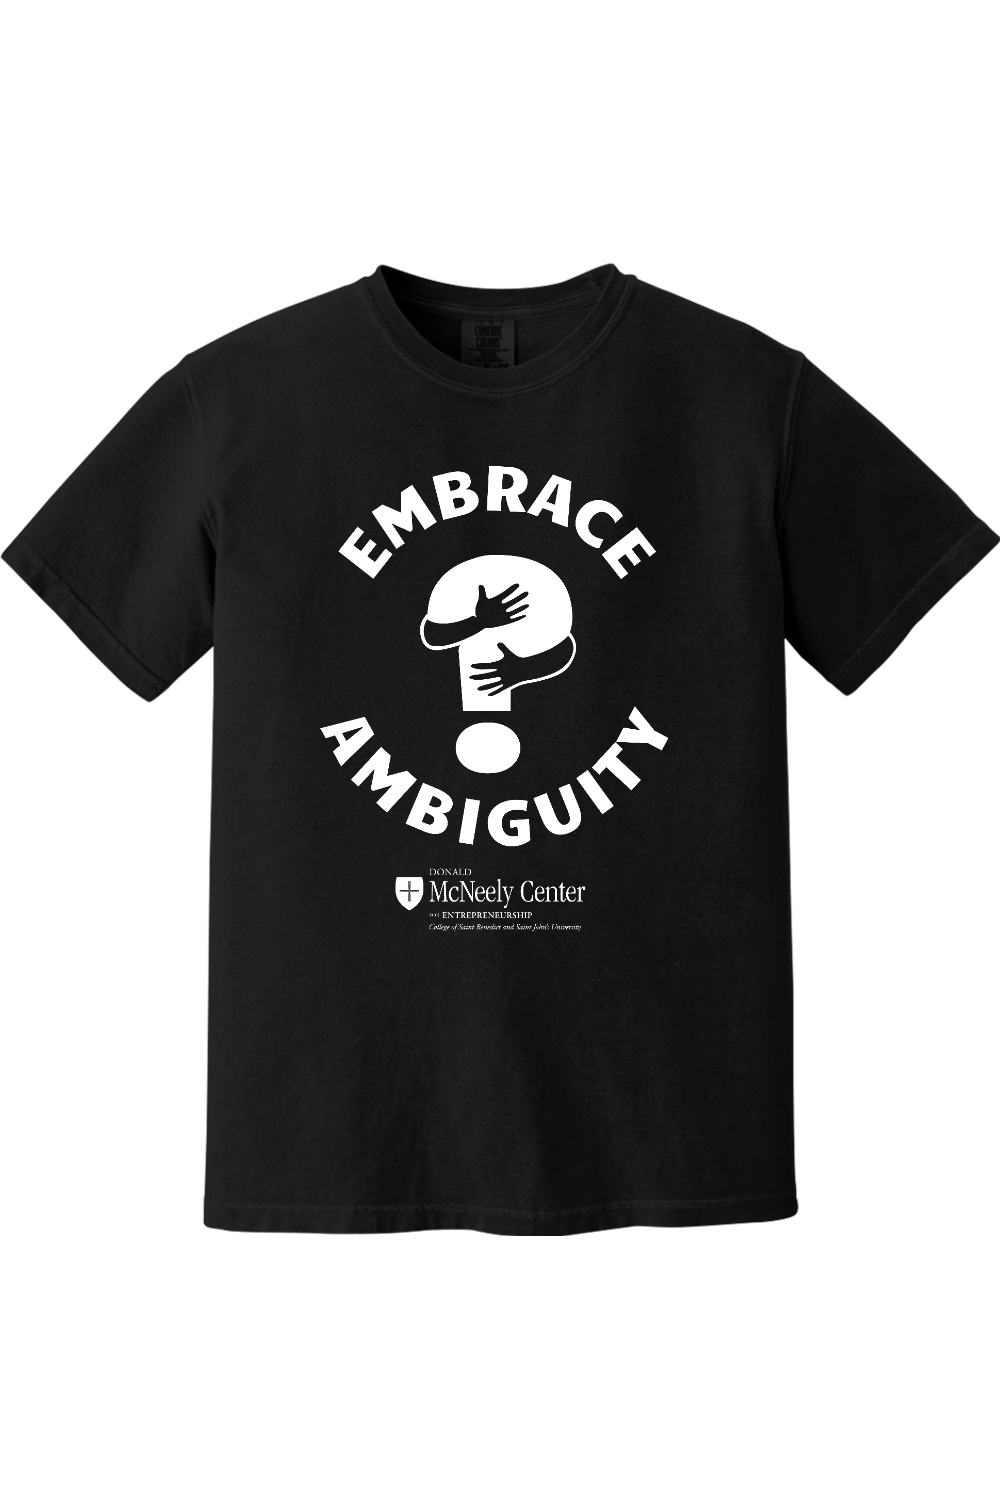 Embrace Ambiguity T-Shirt